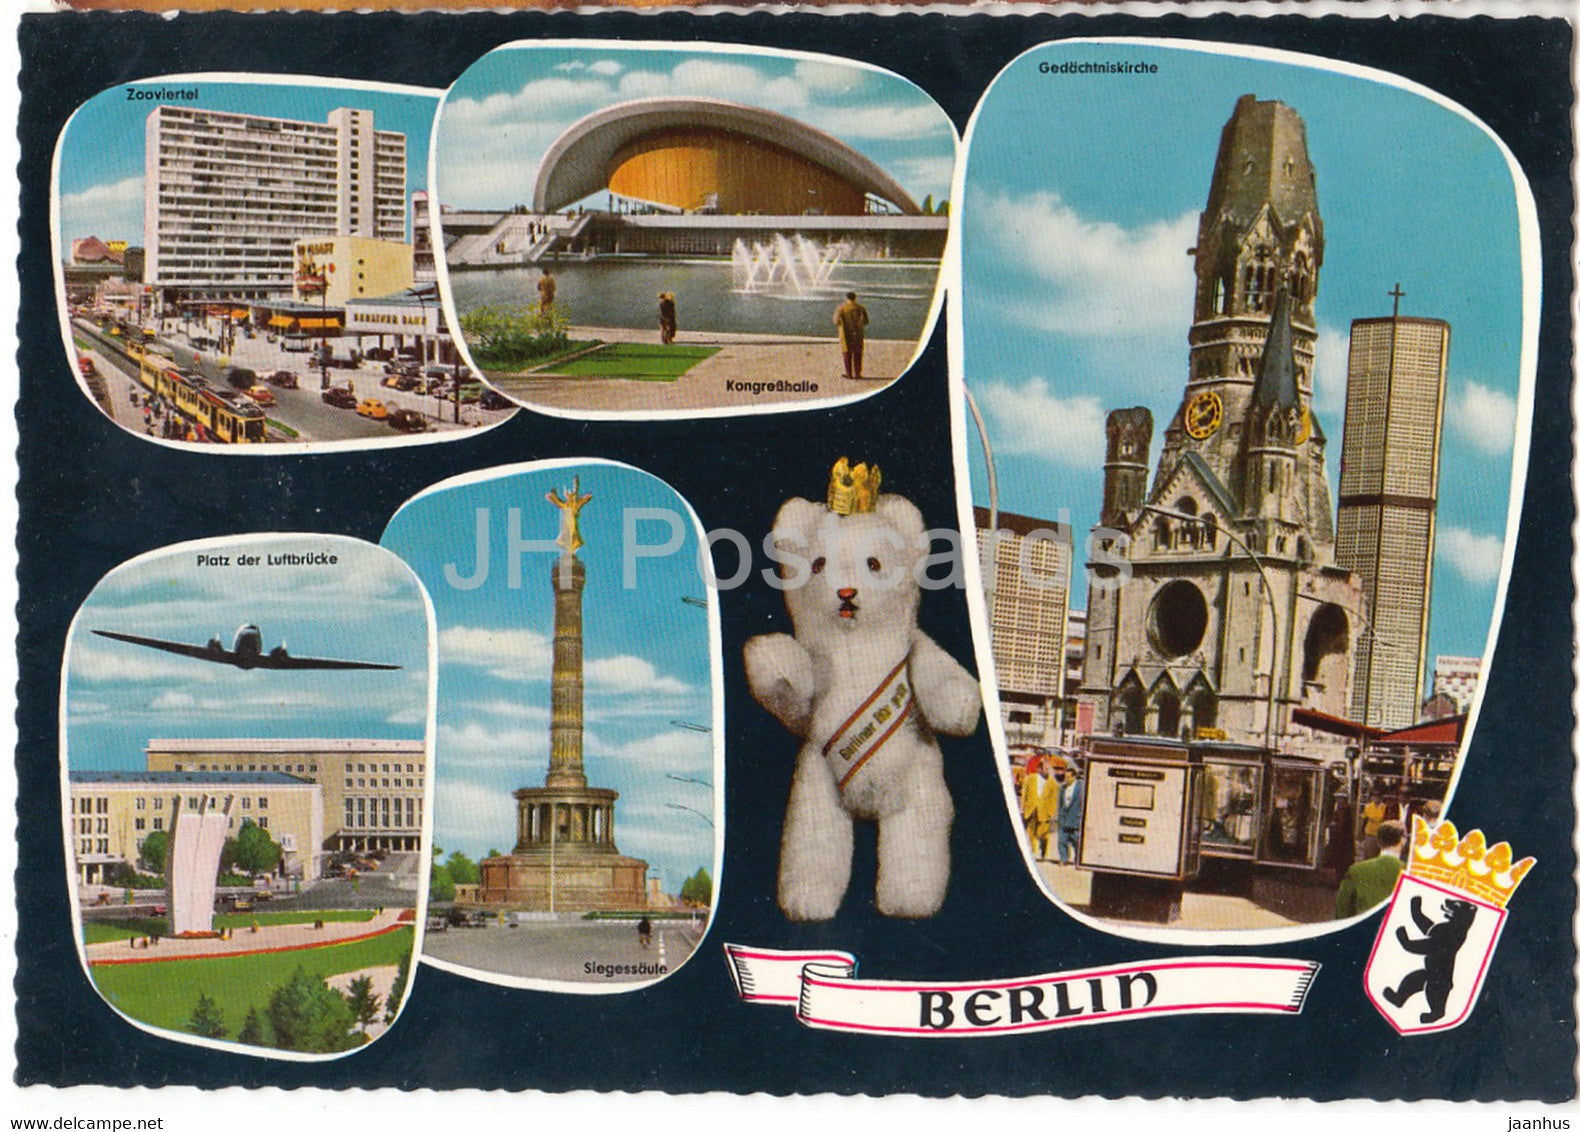 Berlin - Zooviertel - Kongresshalle - Gedachtniskirche - Siegessaule - Platz der Luftbrucke - Germany - unused - JH Postcards